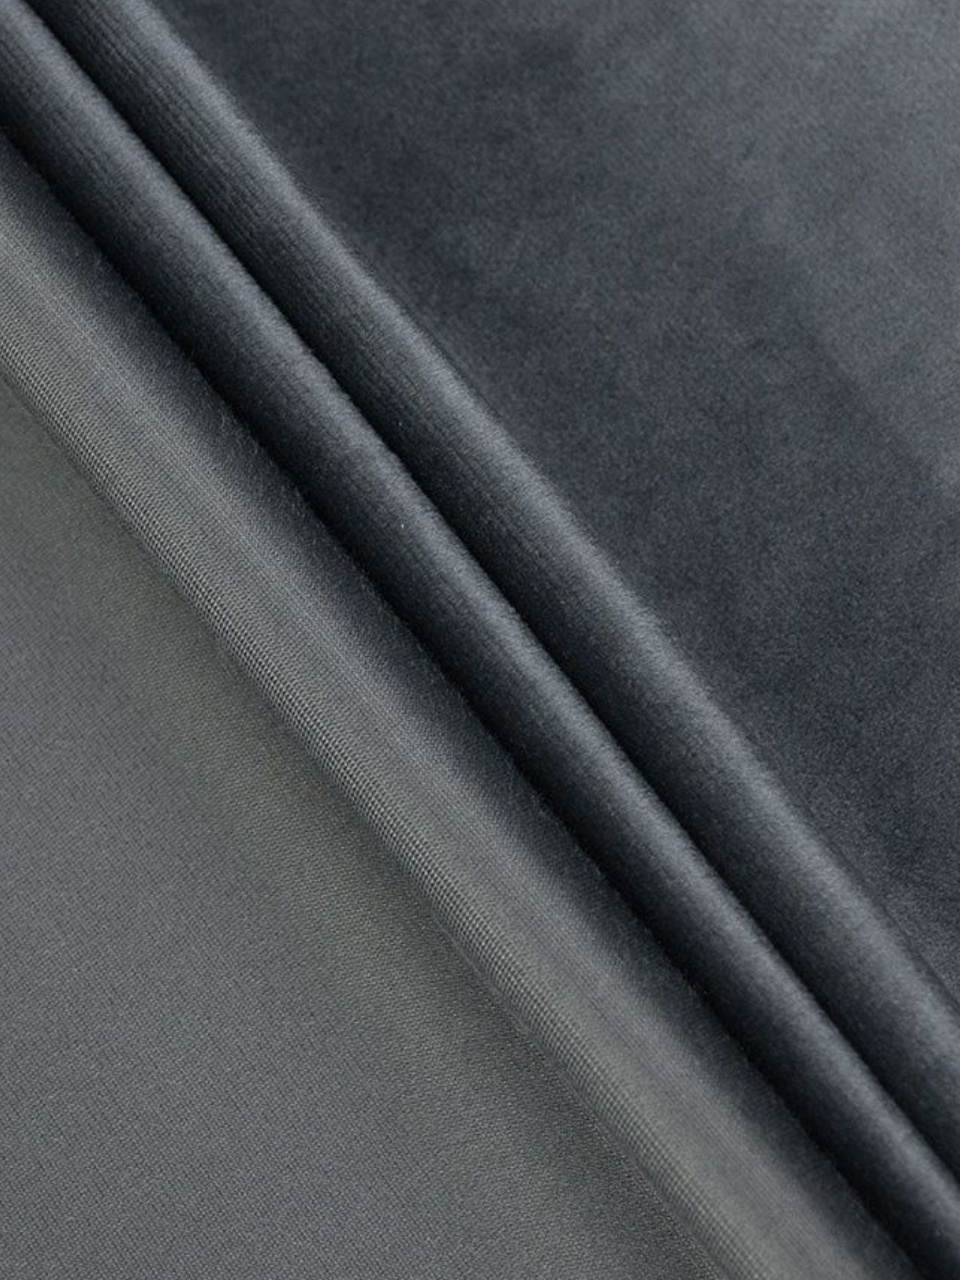 Портьеры Бархат тёмно-серый - 590 ₽, заказать онлайн.